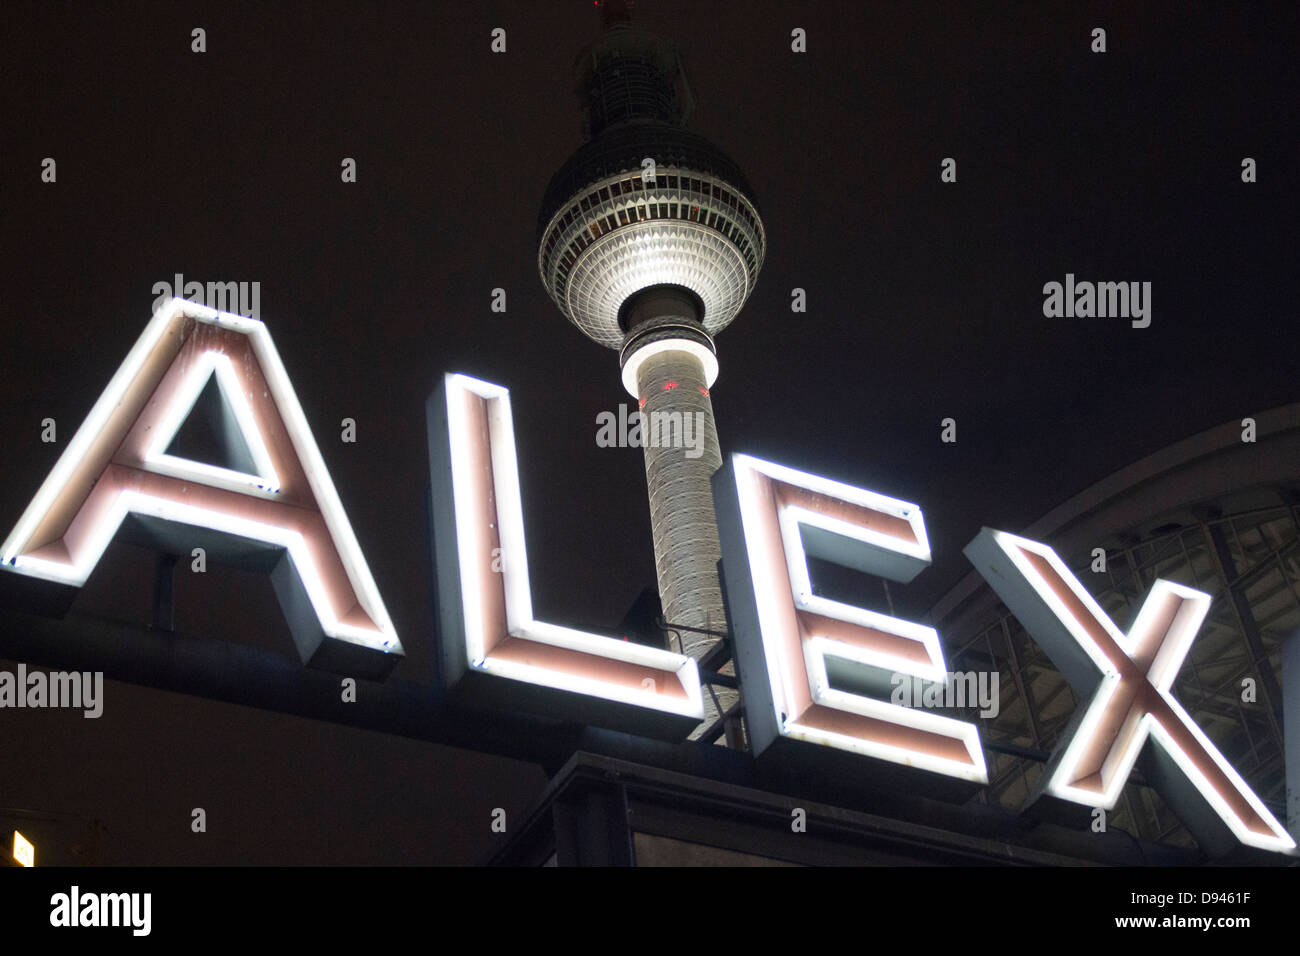 Fernsehturm Fernsehturm und Alex Teil Alexanderplatz Station zu unterzeichnen, in der Nacht Mitte Berlin Deutschland Stockfoto